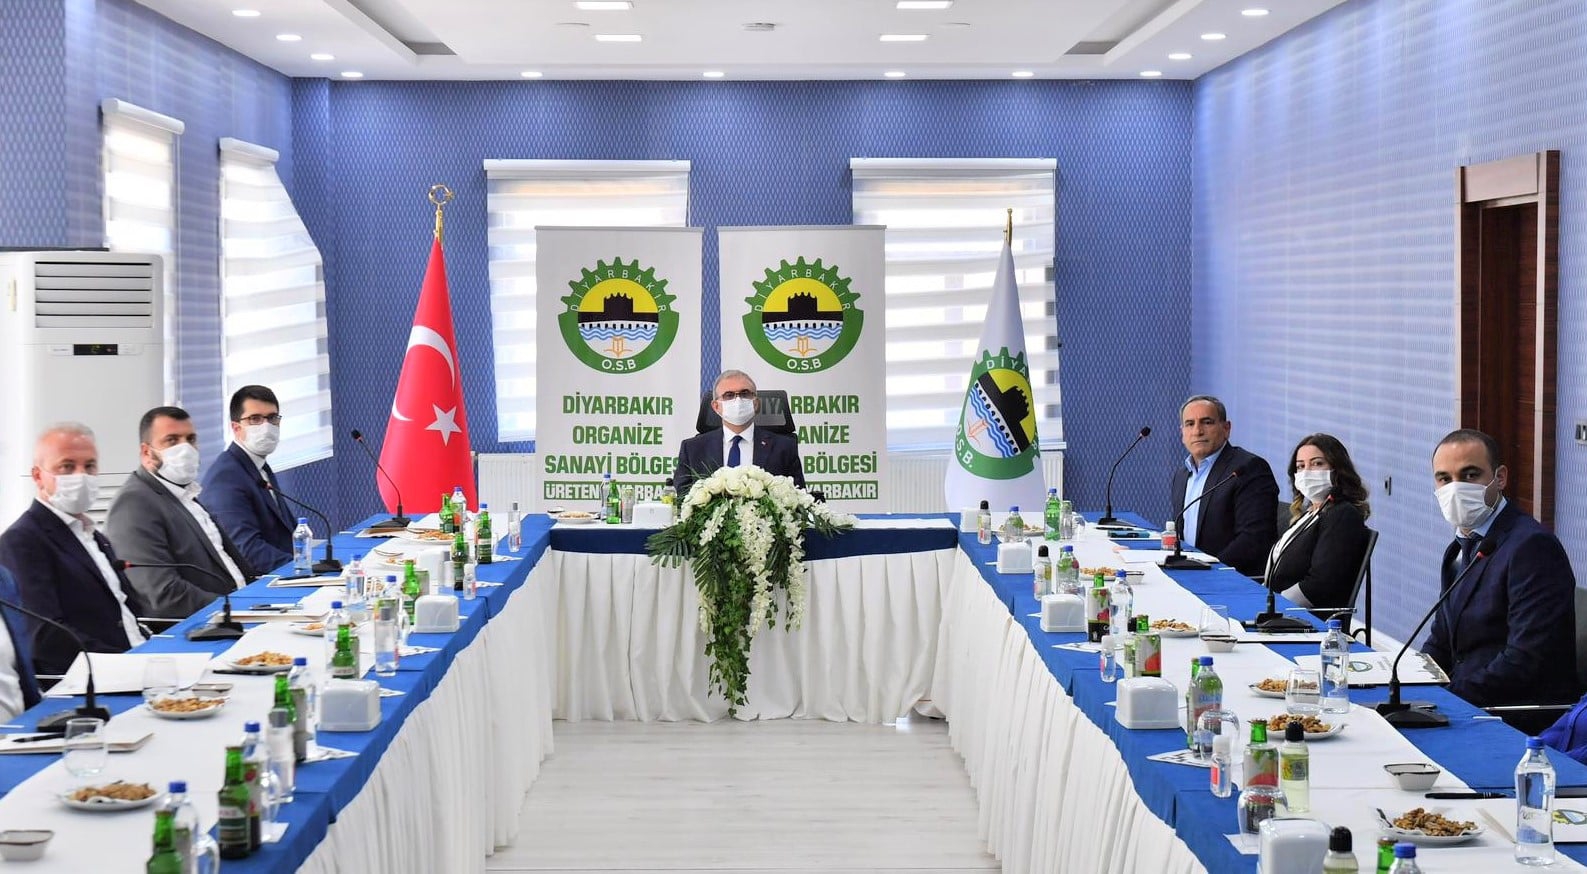 Diyarbakır Organize Sanayi Bölgesi Müteşebbis Heyeti toplantısı Diyarbakır Valisi sayın Münir Karaloğlu, başkanlığında gerçekleştirildi.